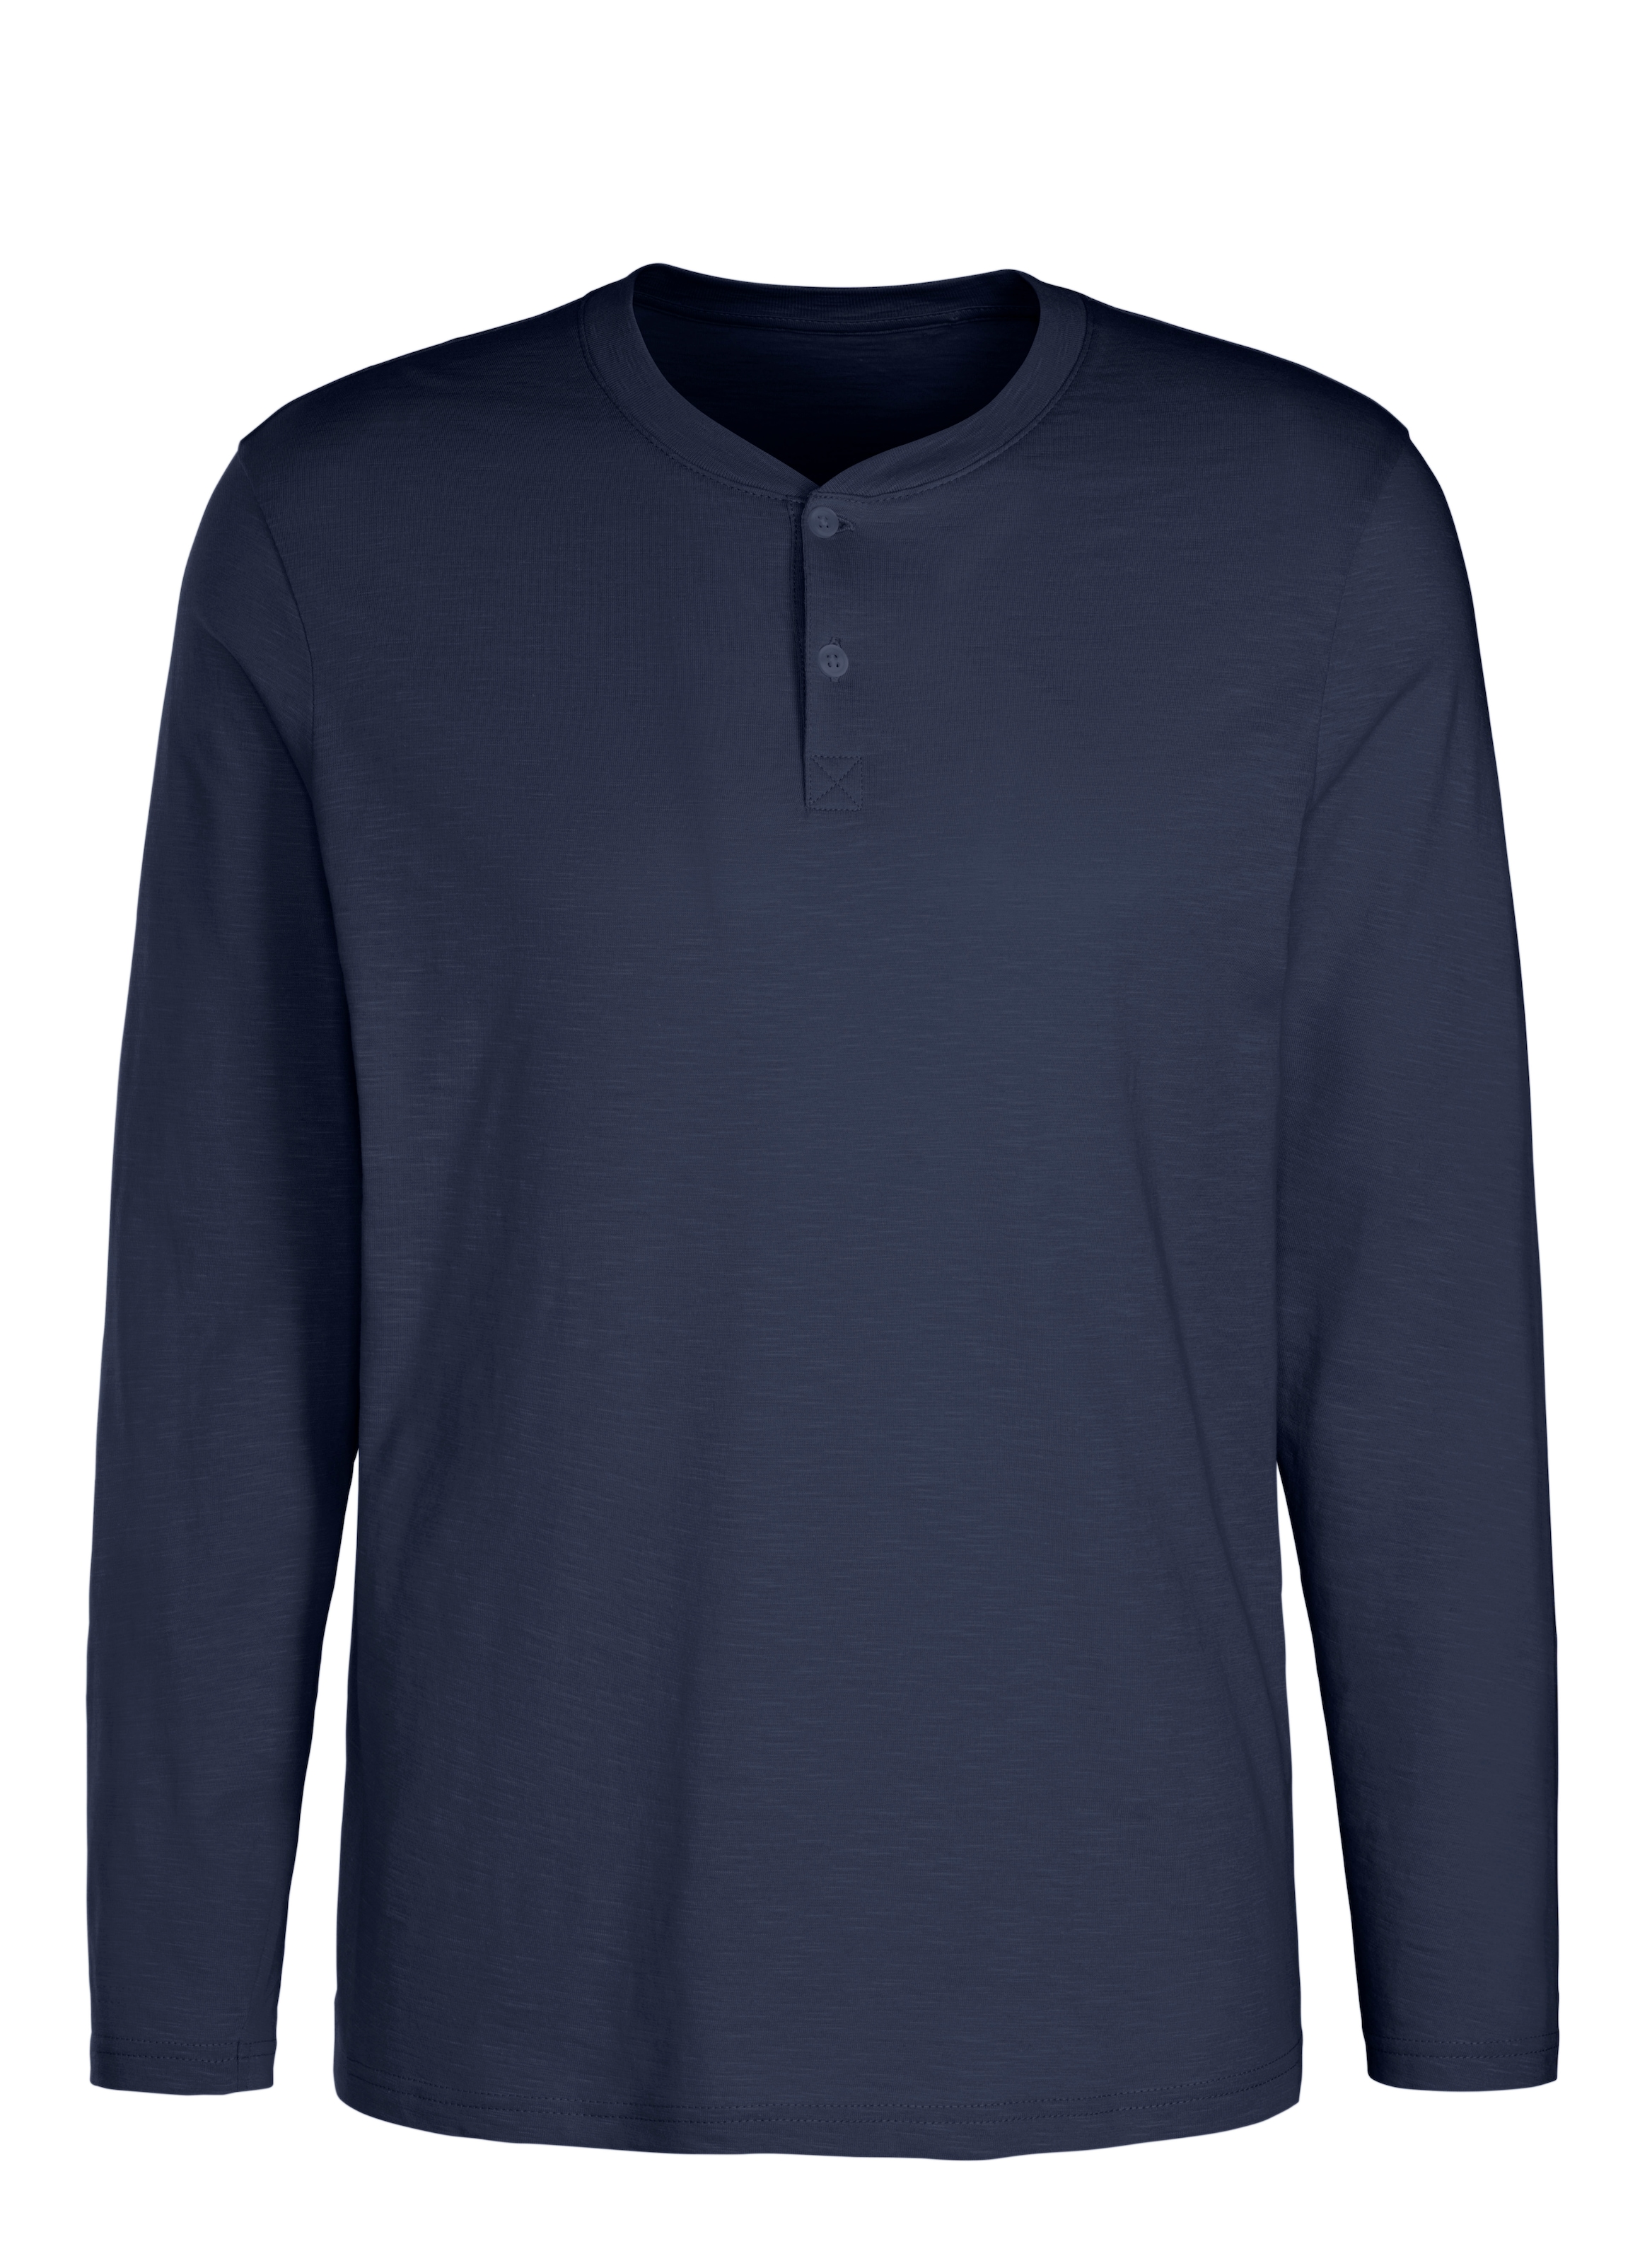 H.I.S Henleyshirt, Langarm, Shirt mit Knopfleiste aus strukturierter Baumwoll-Qualität